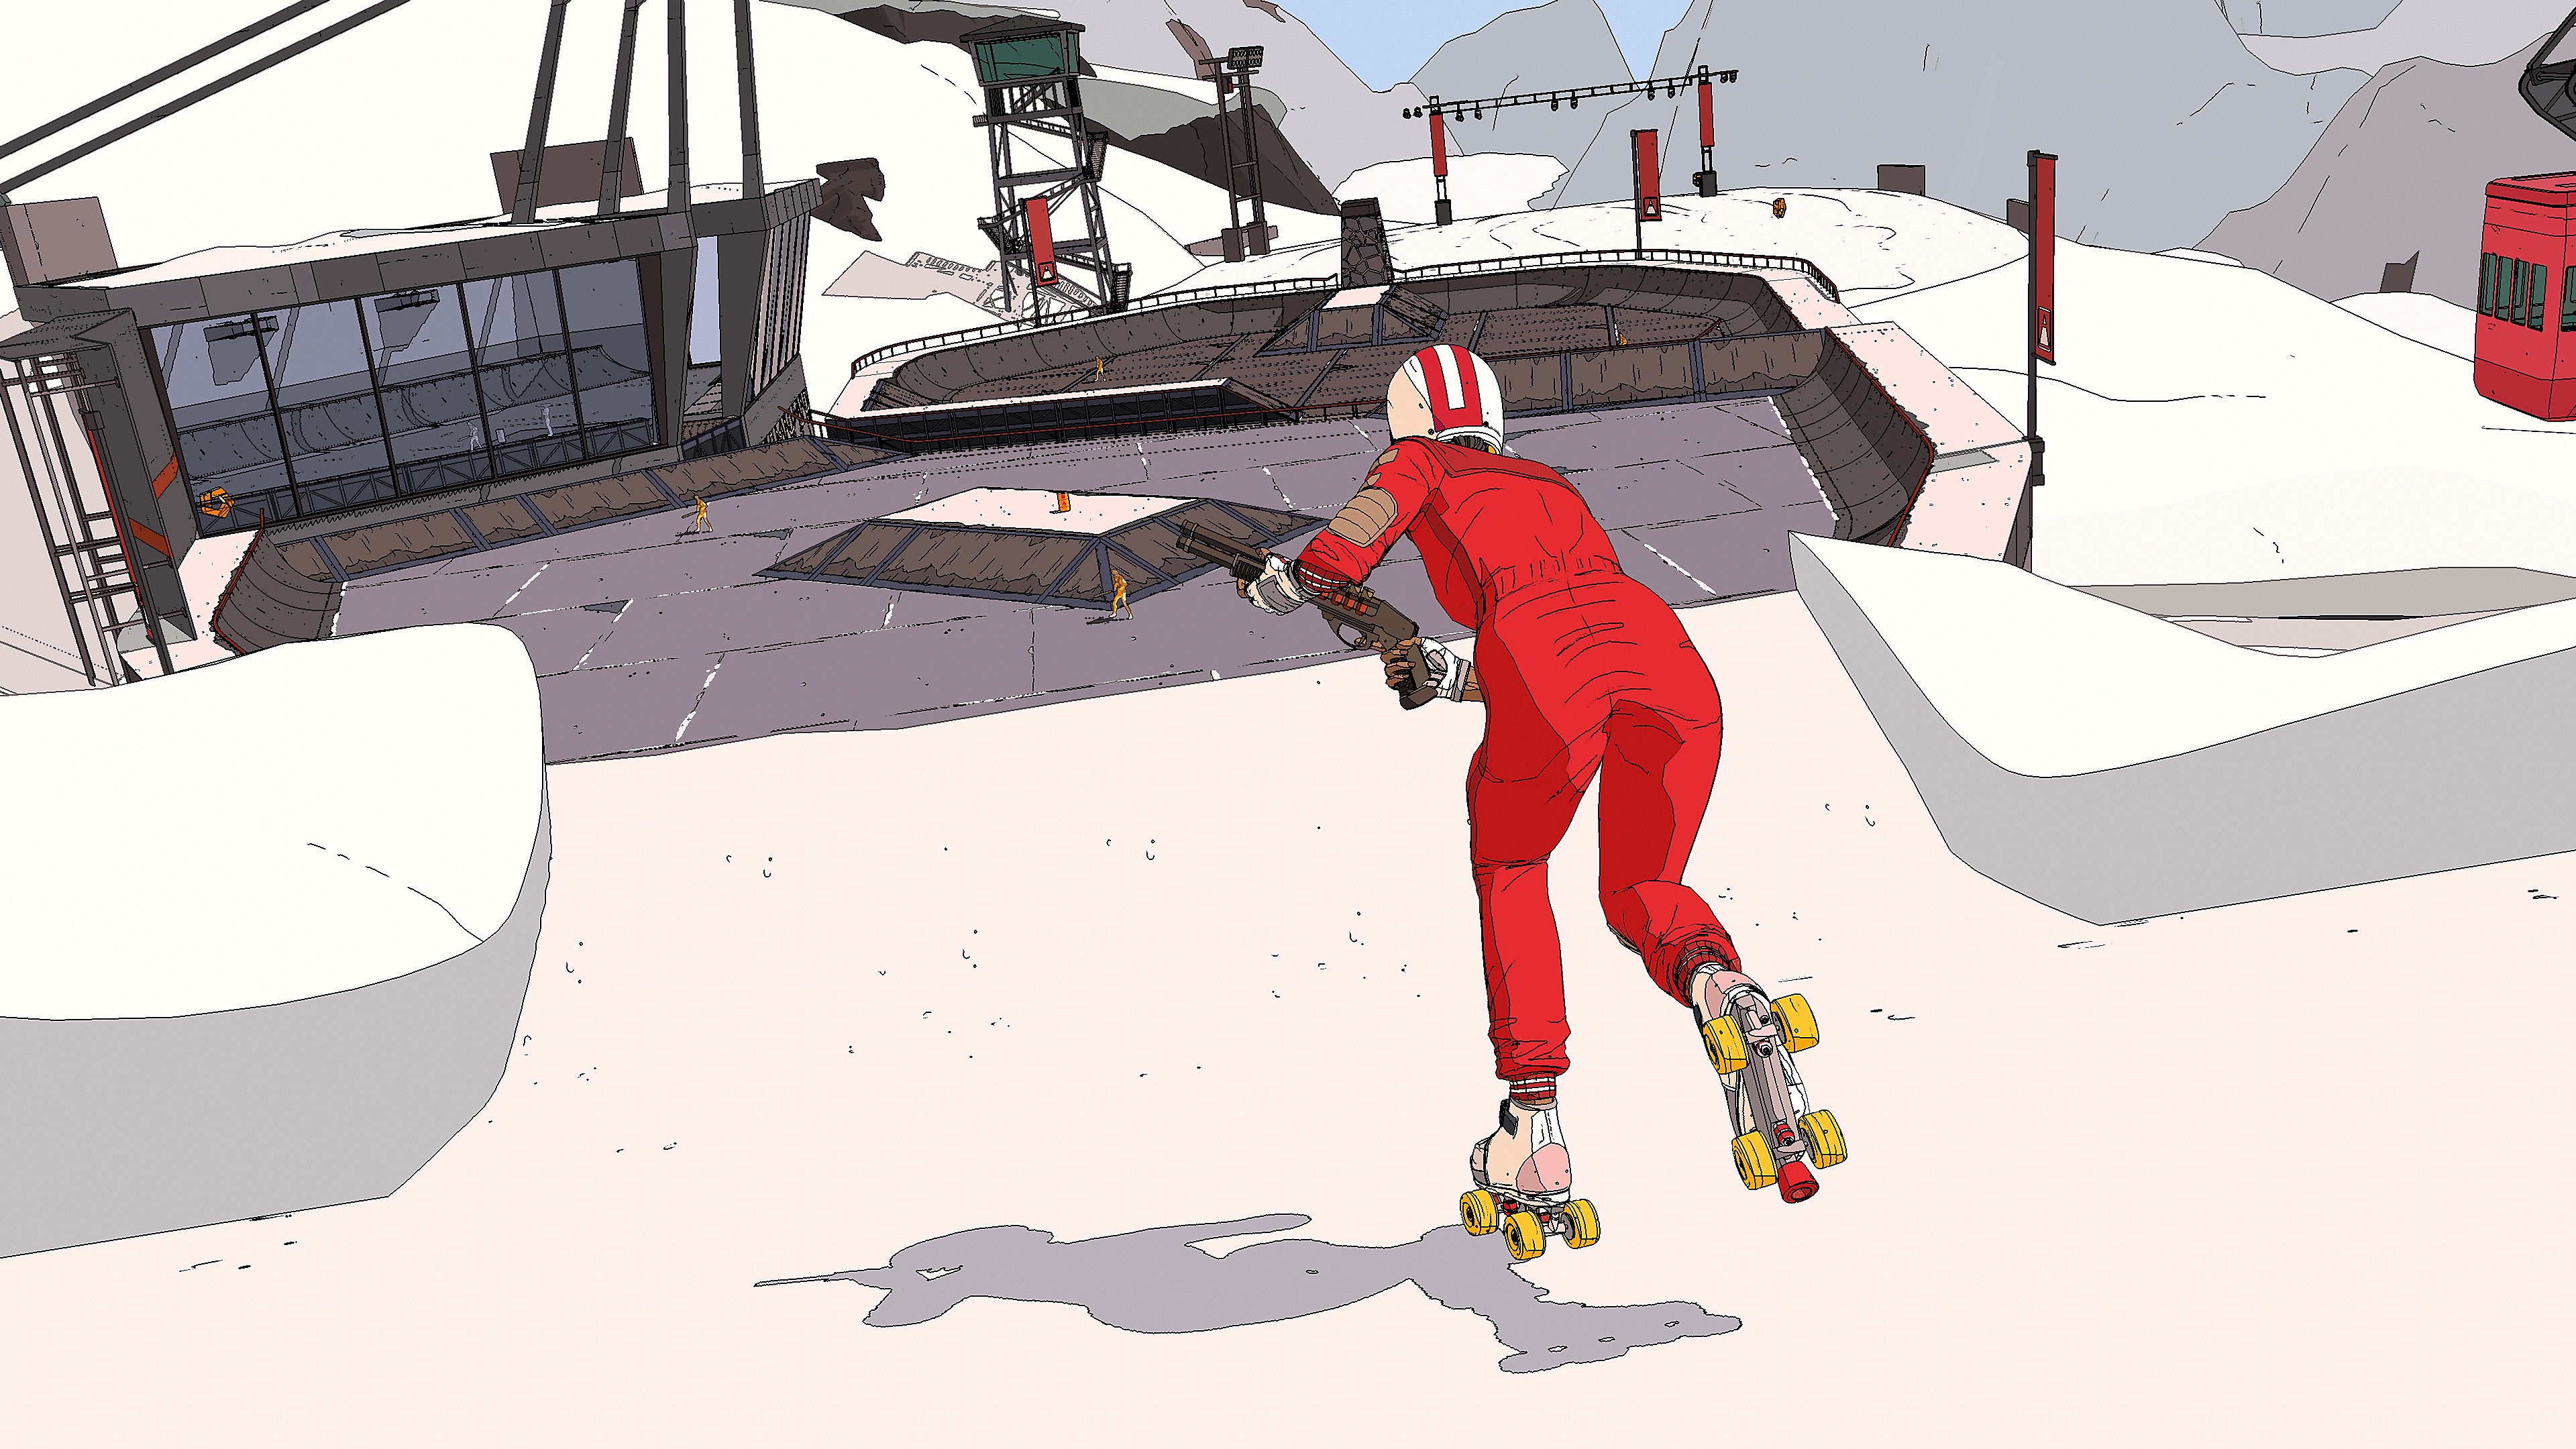 《Rollerdrome》螢幕截圖，顯示一名穿著連褲工作服、頭戴安全帽的滑板玩家一邊玩滑板一邊用霰彈槍射擊